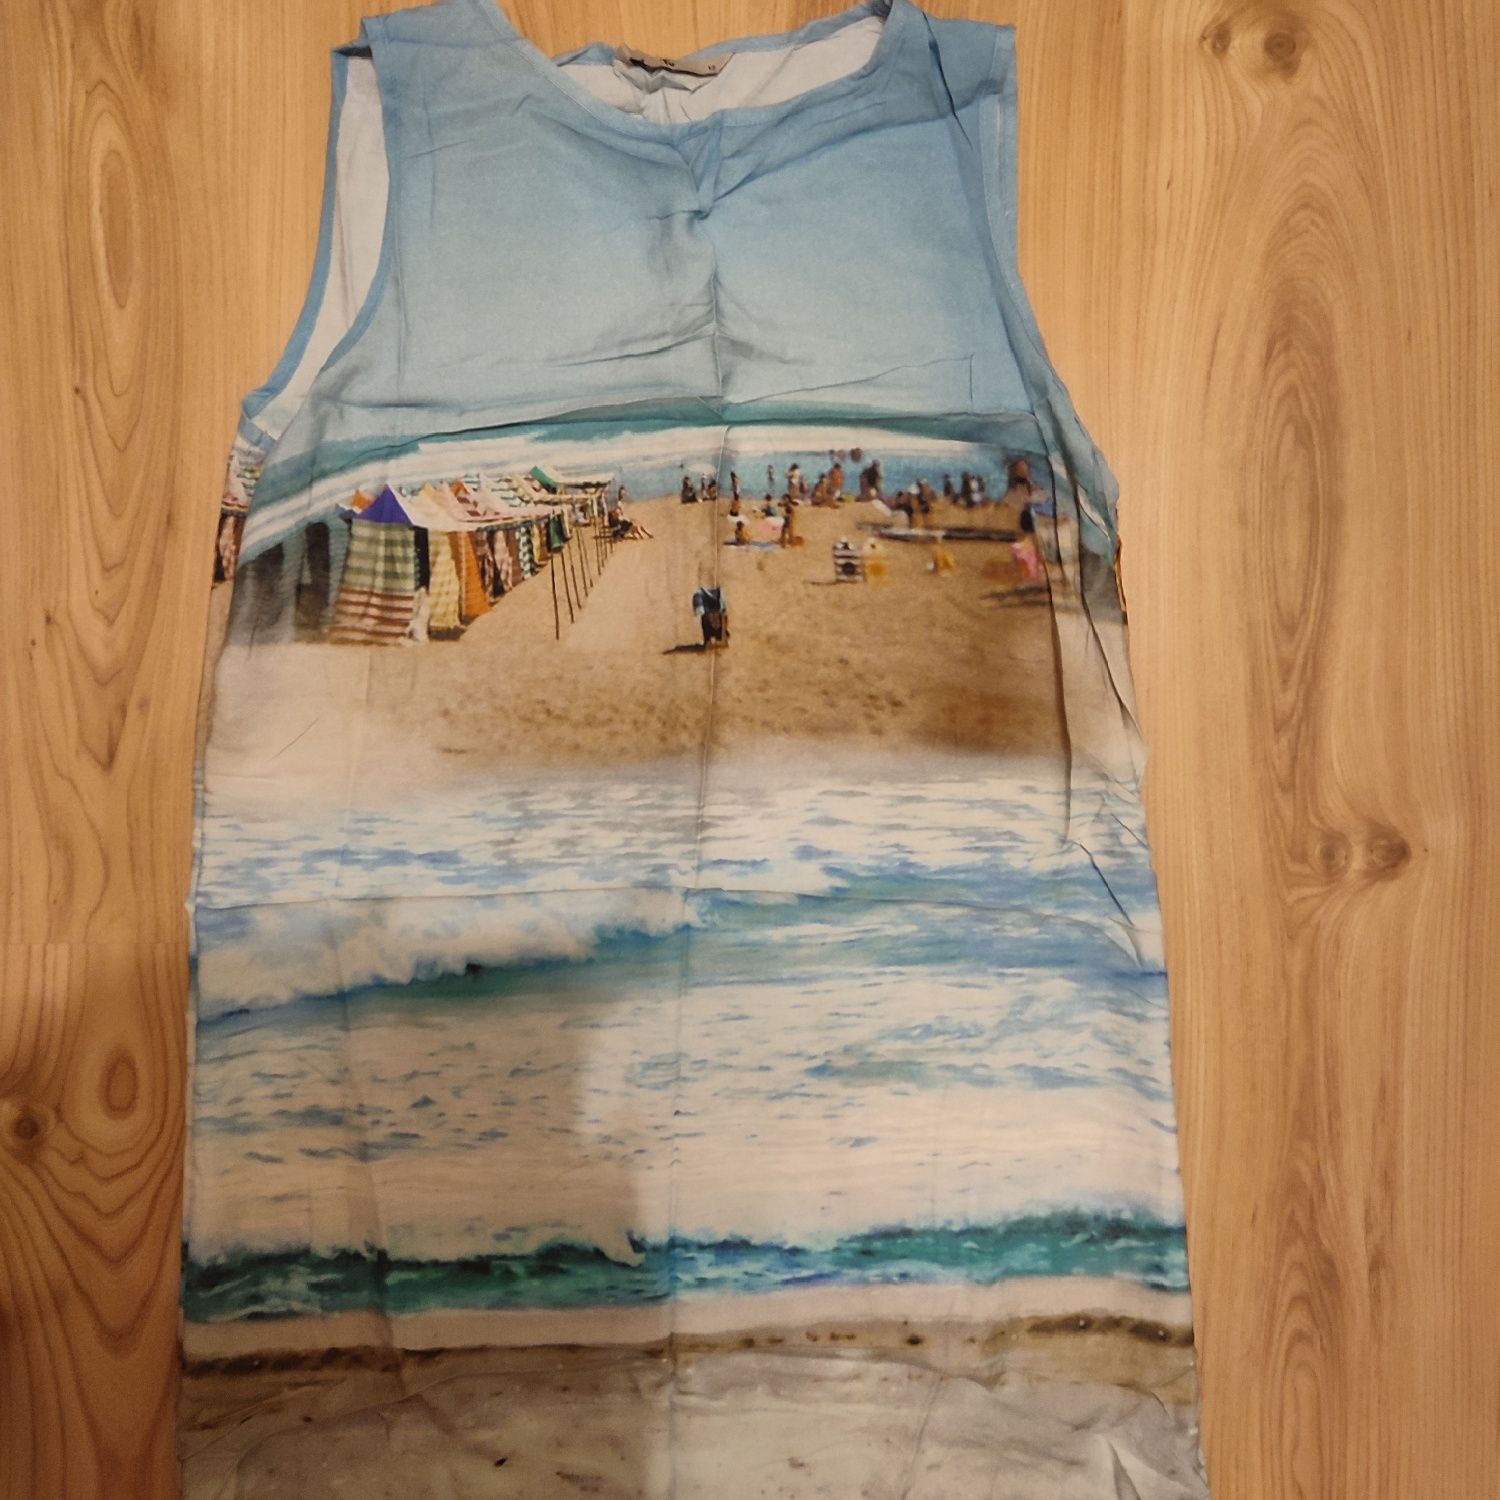 Sukienka z obrazkiem - morzem, falami, plażą.
Stan bardzo dobry, nie u